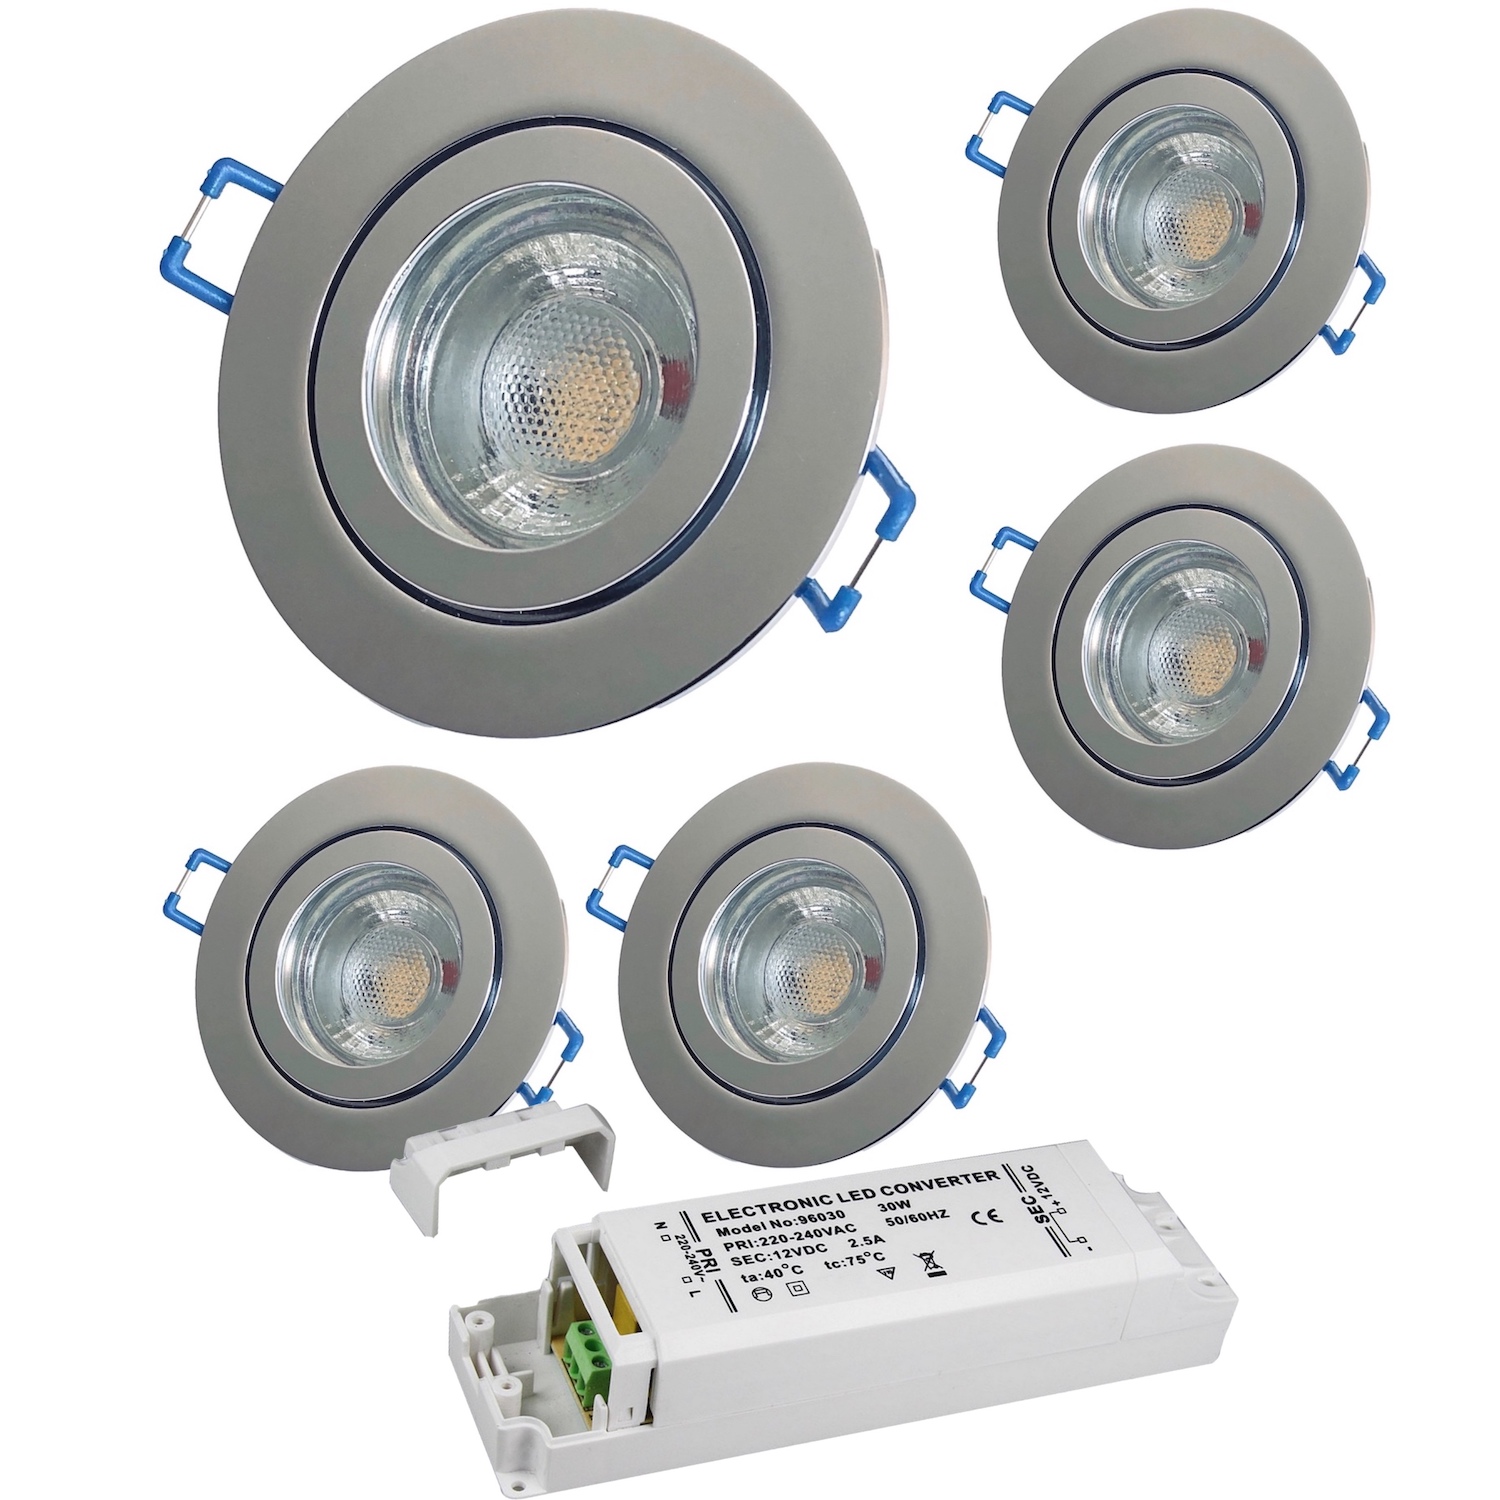 5 x 12V LED Bad Einbaustrahler / IP44 / 5W mit LED Trafo - Lichtfaktor24